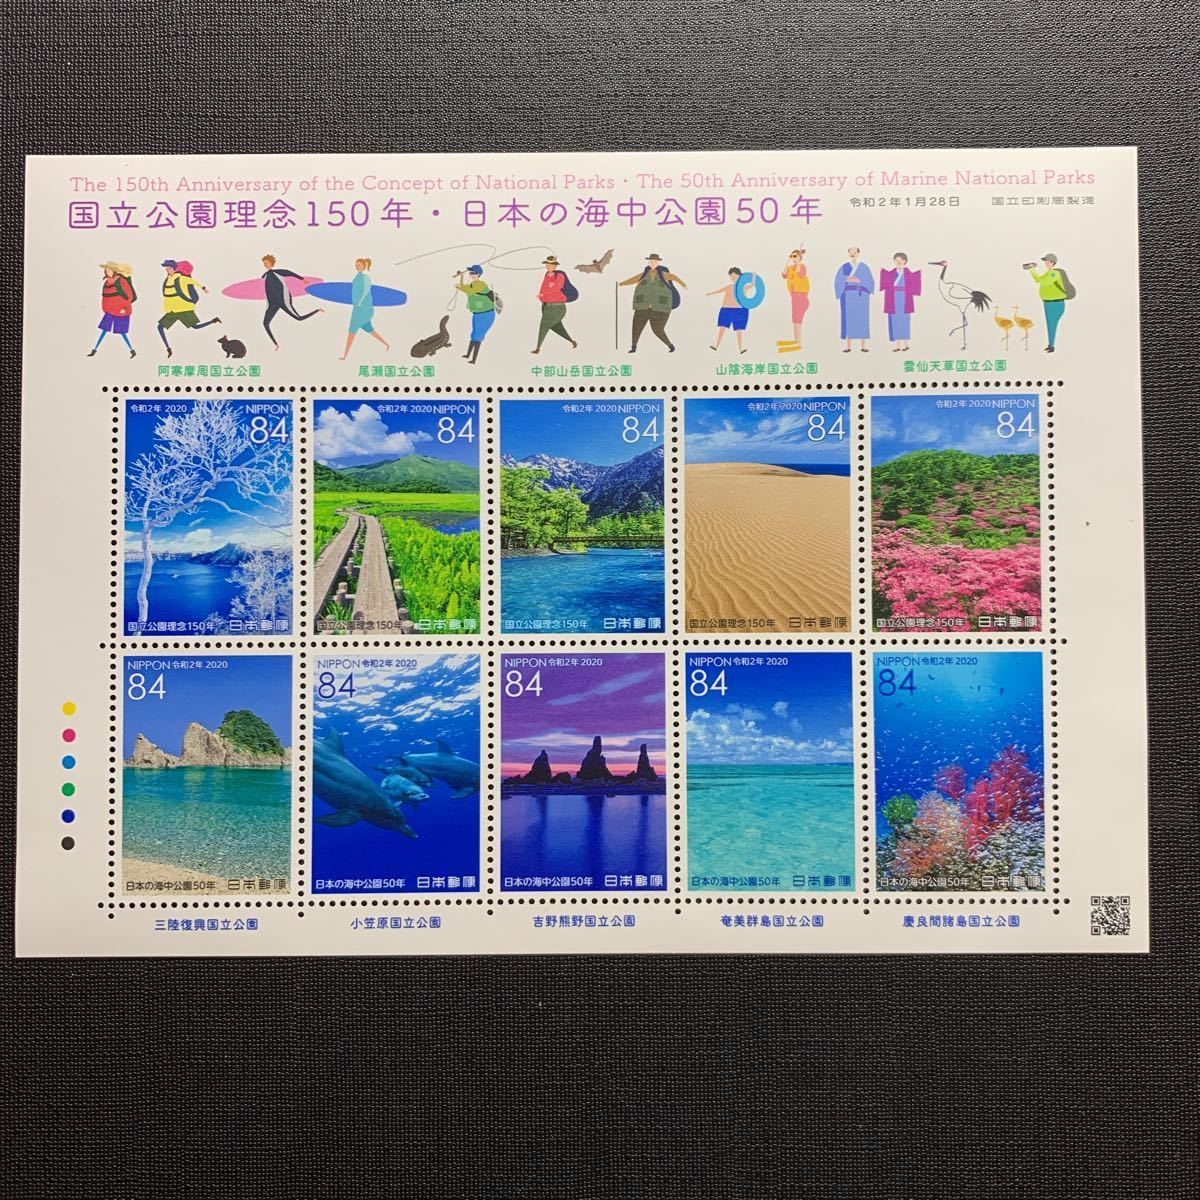 国立公園理念150年・日本の海中公園50年 記念切手 2020.1.28発行 特印付きの画像2